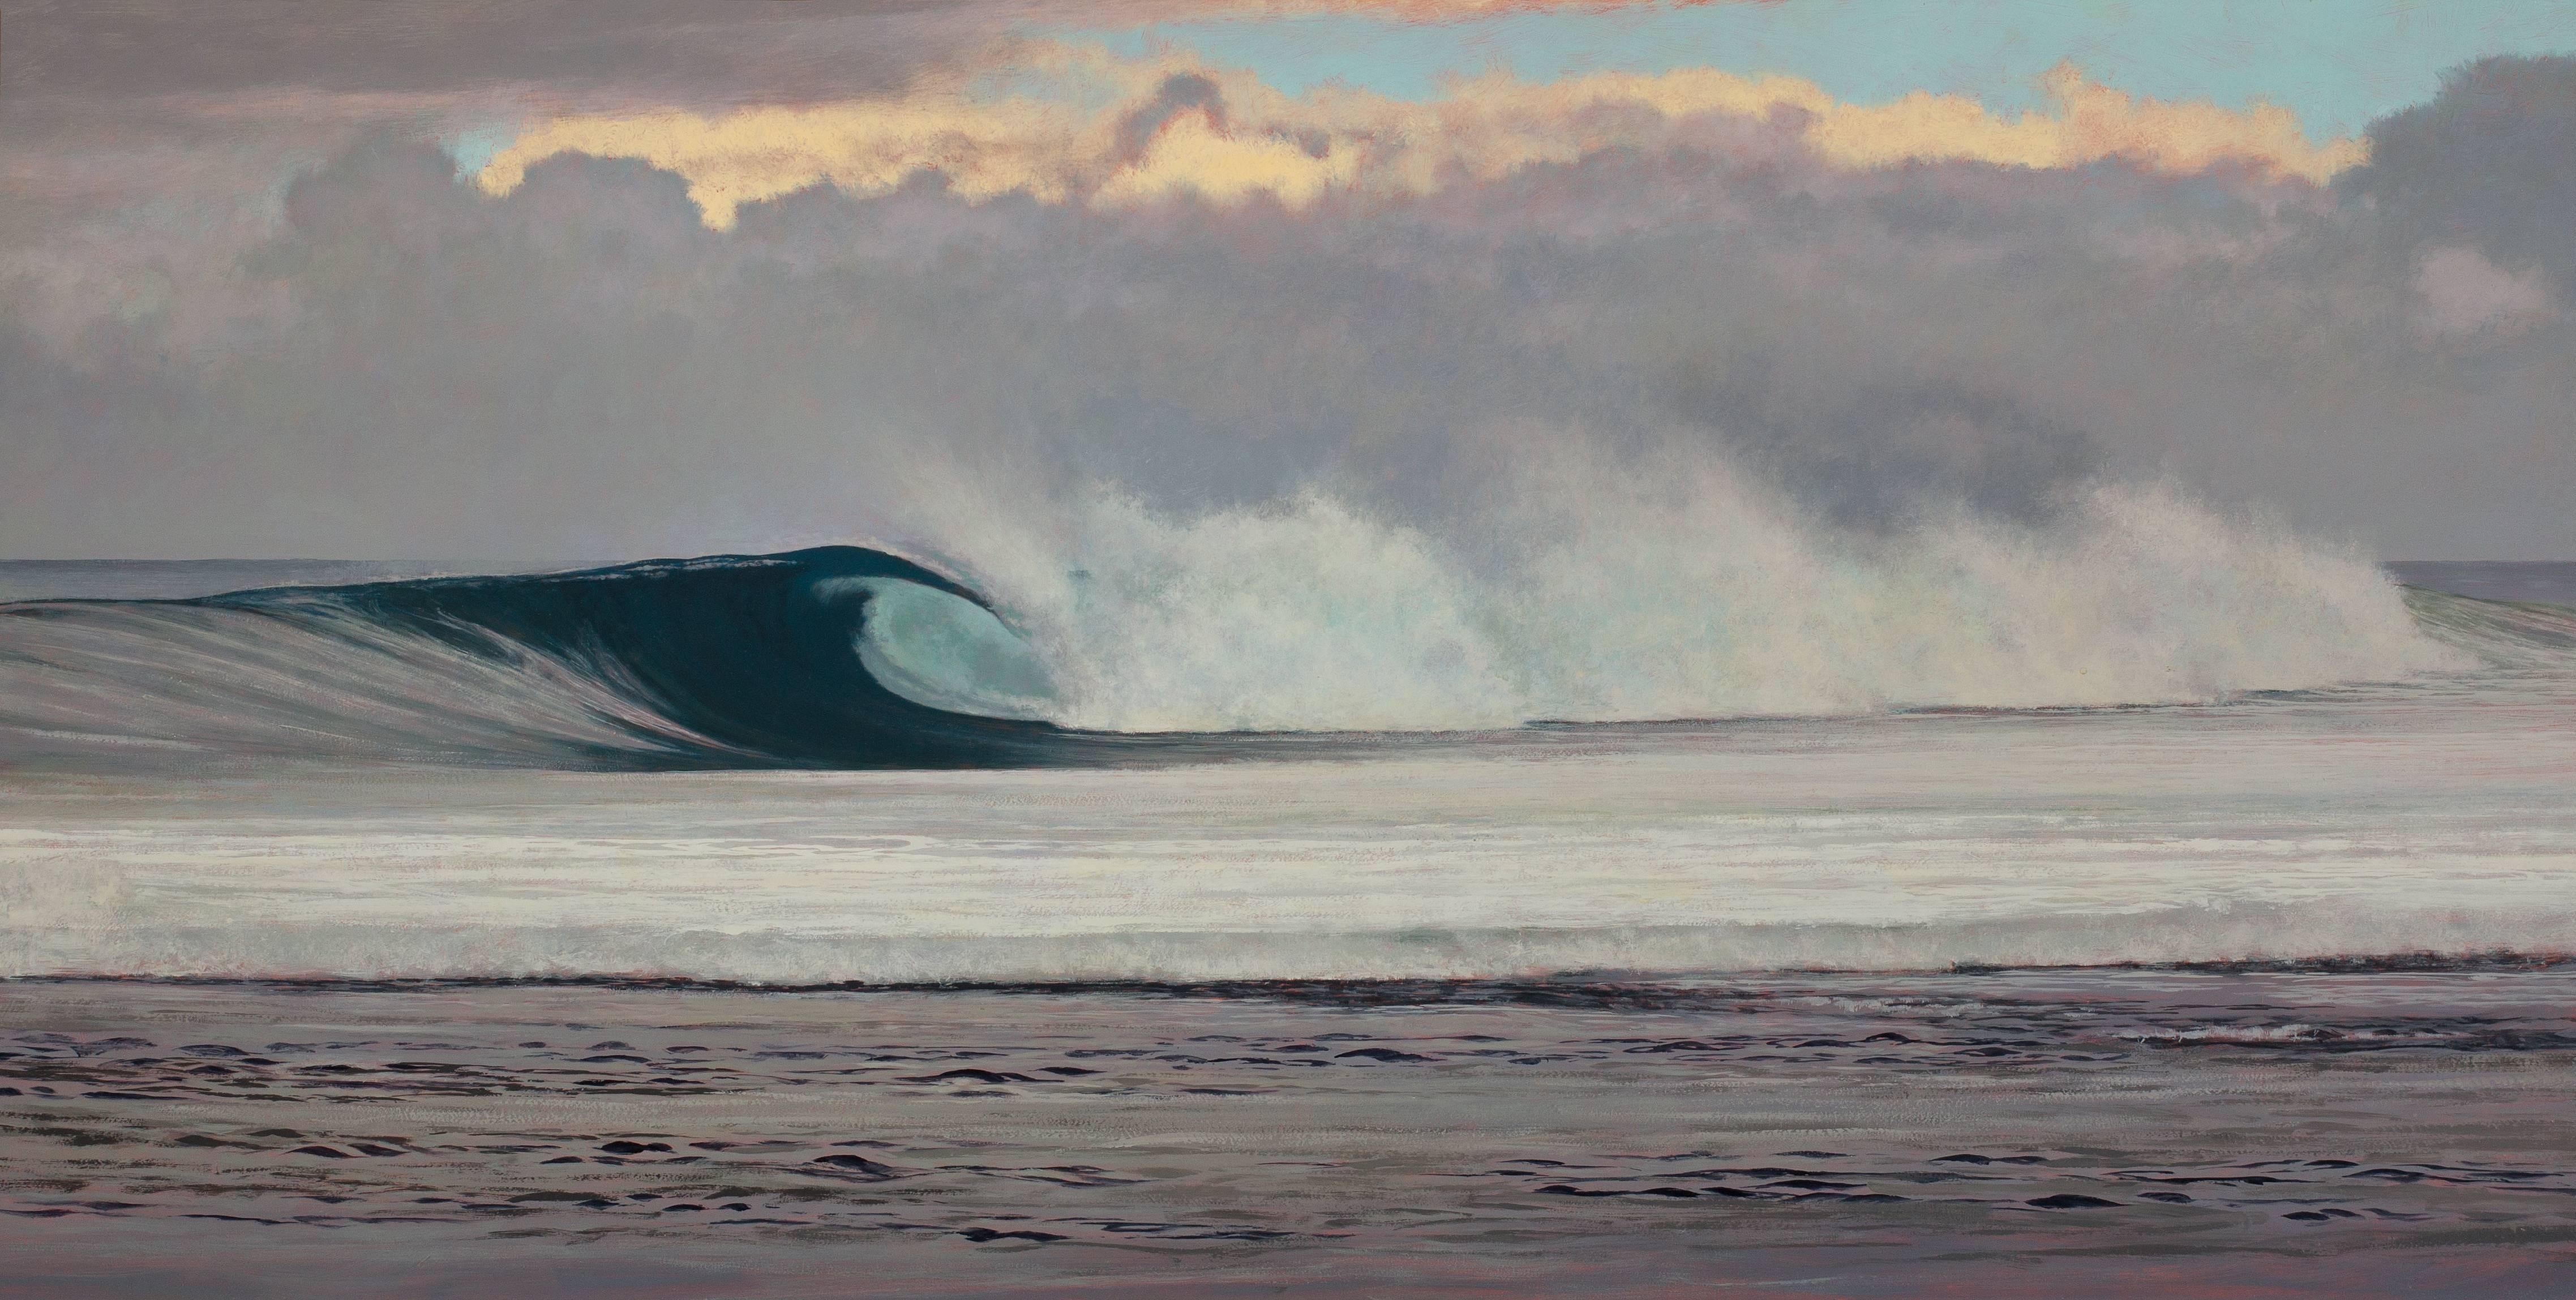 Twilight Wave, Kauai - Shoreline und entstehende Welle mit dramatischem wolkenblauem Himmel  – Painting von Jeff Aeling